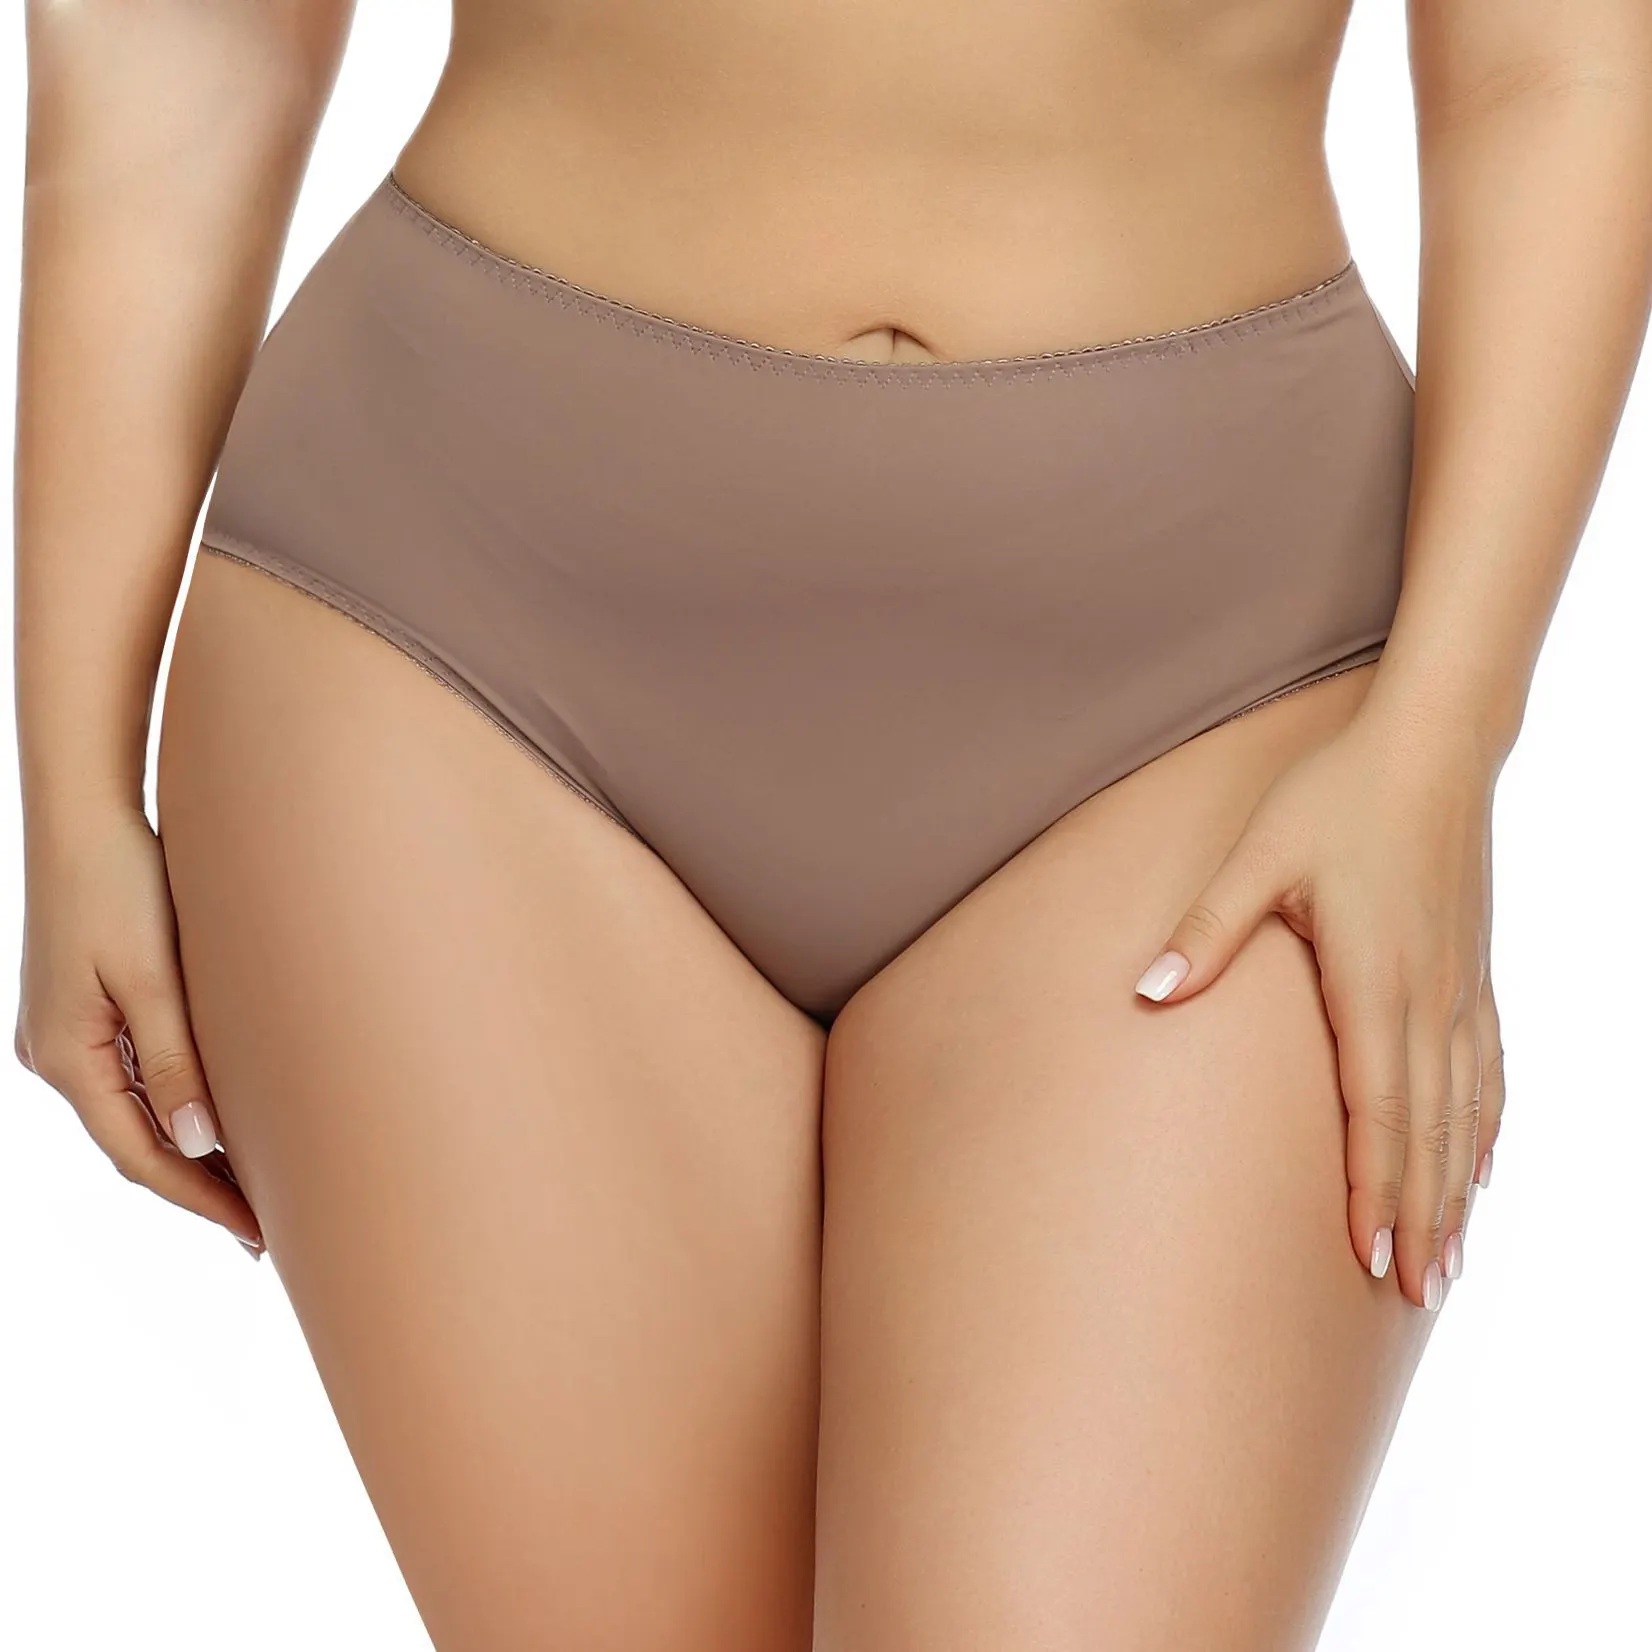 New Design Comfort Underwear Panties Sexy Skinny Ladies Underwear Seamless High Waist Cotton Underwear